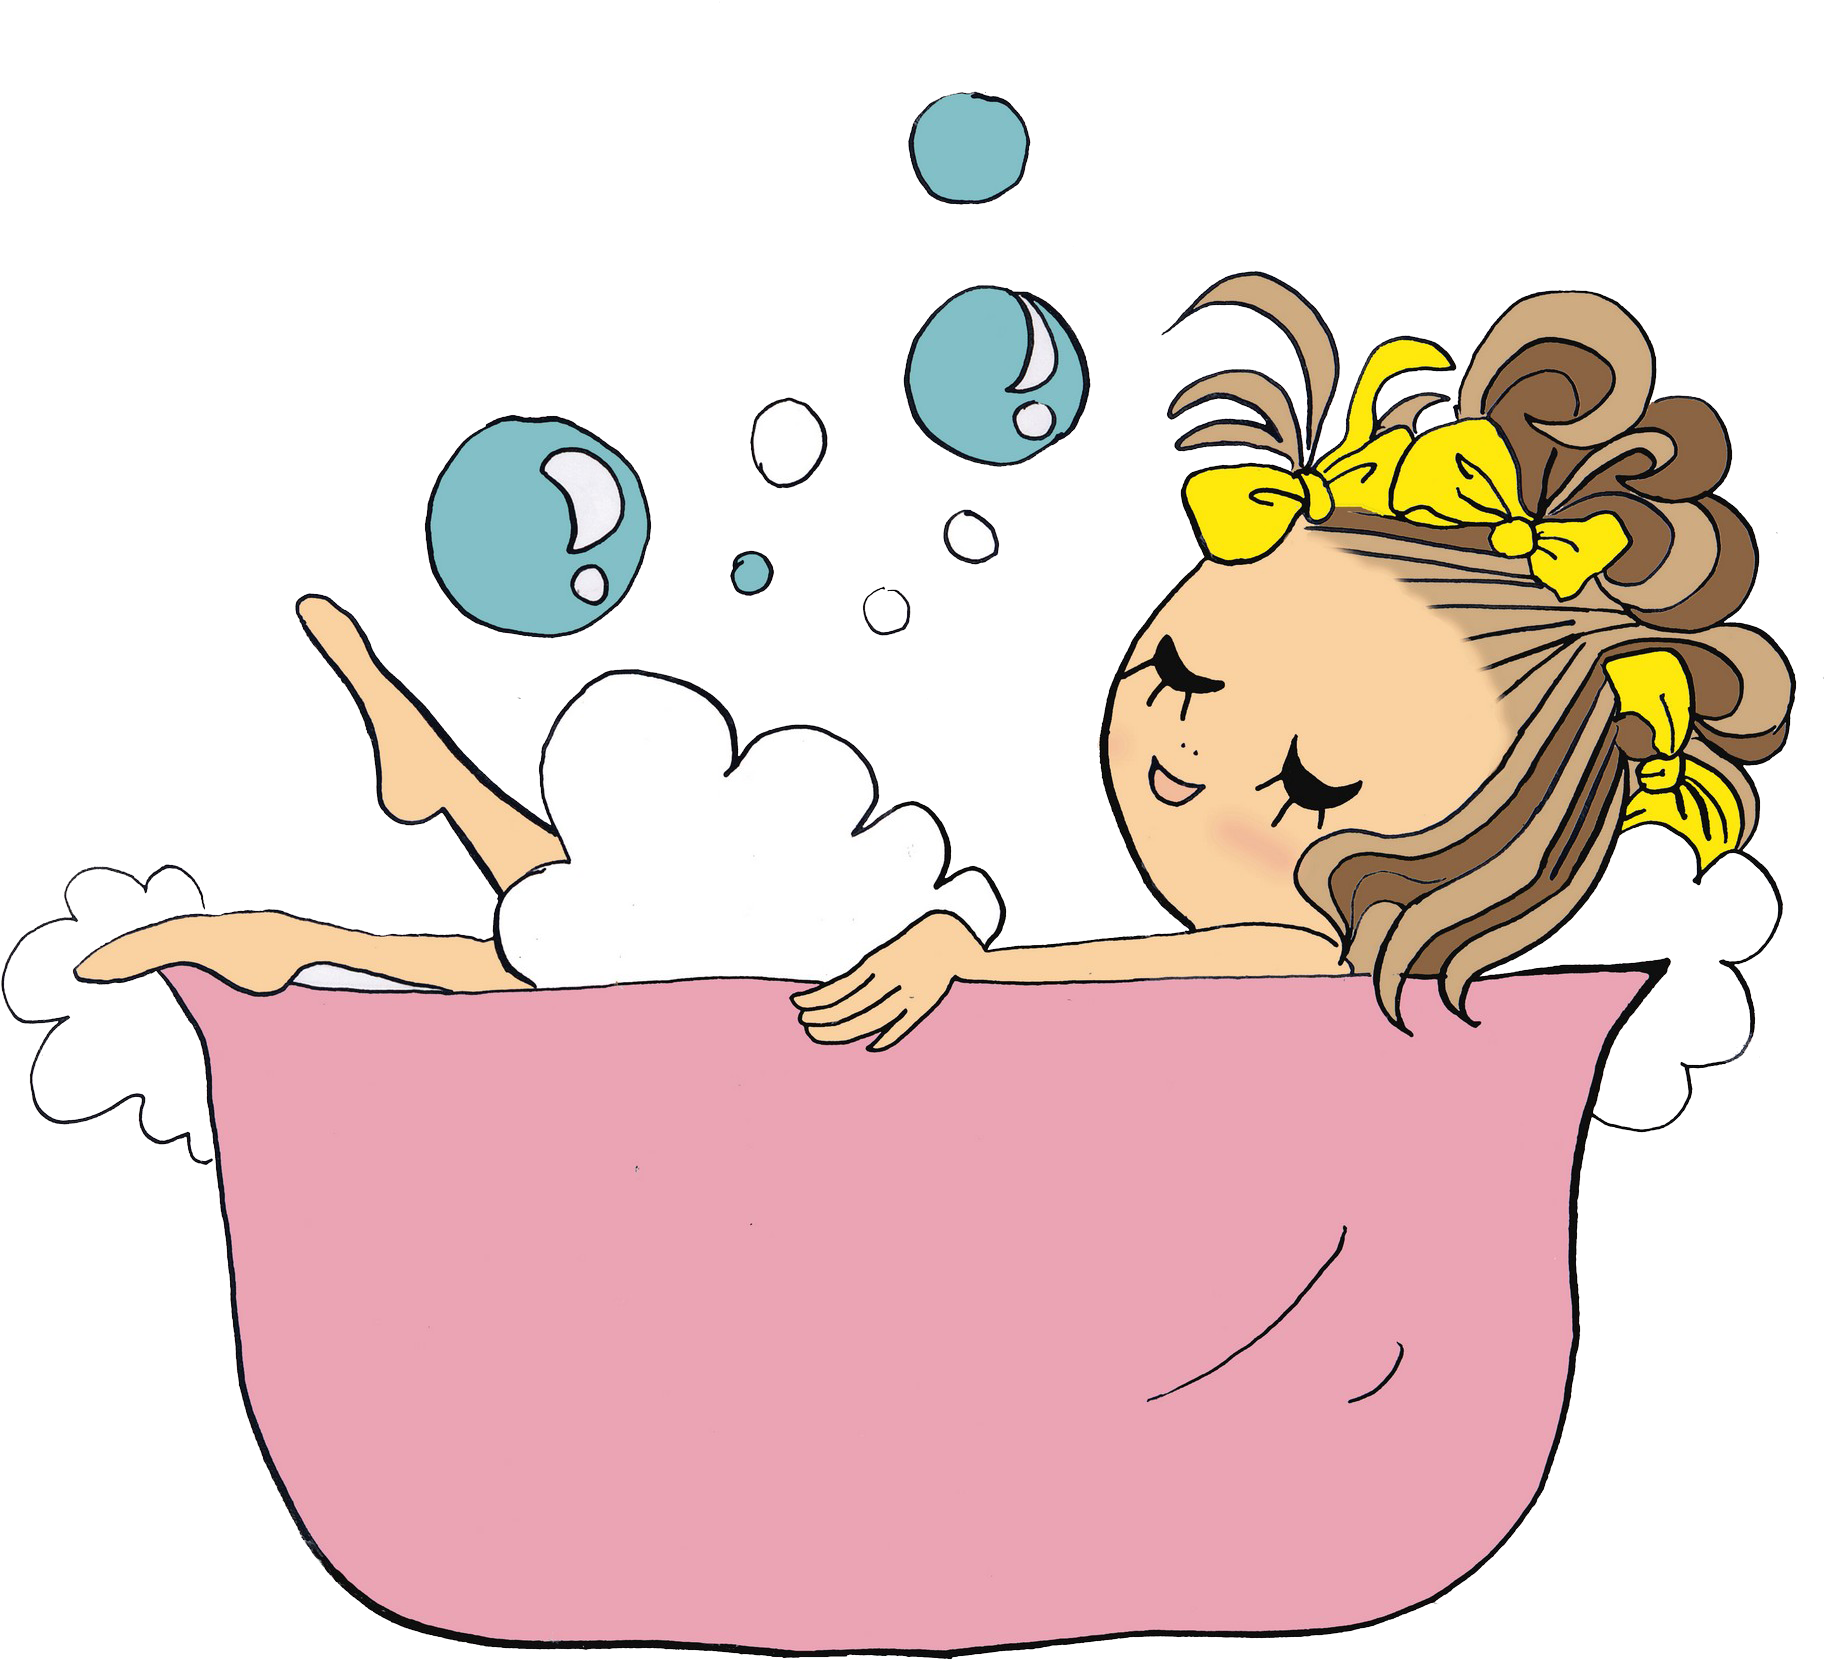 Bathtub Drawing Bathing Cartoon Clip Art - การ์ตูน อาบ น้ํา ฝักบัว (2180x1770)